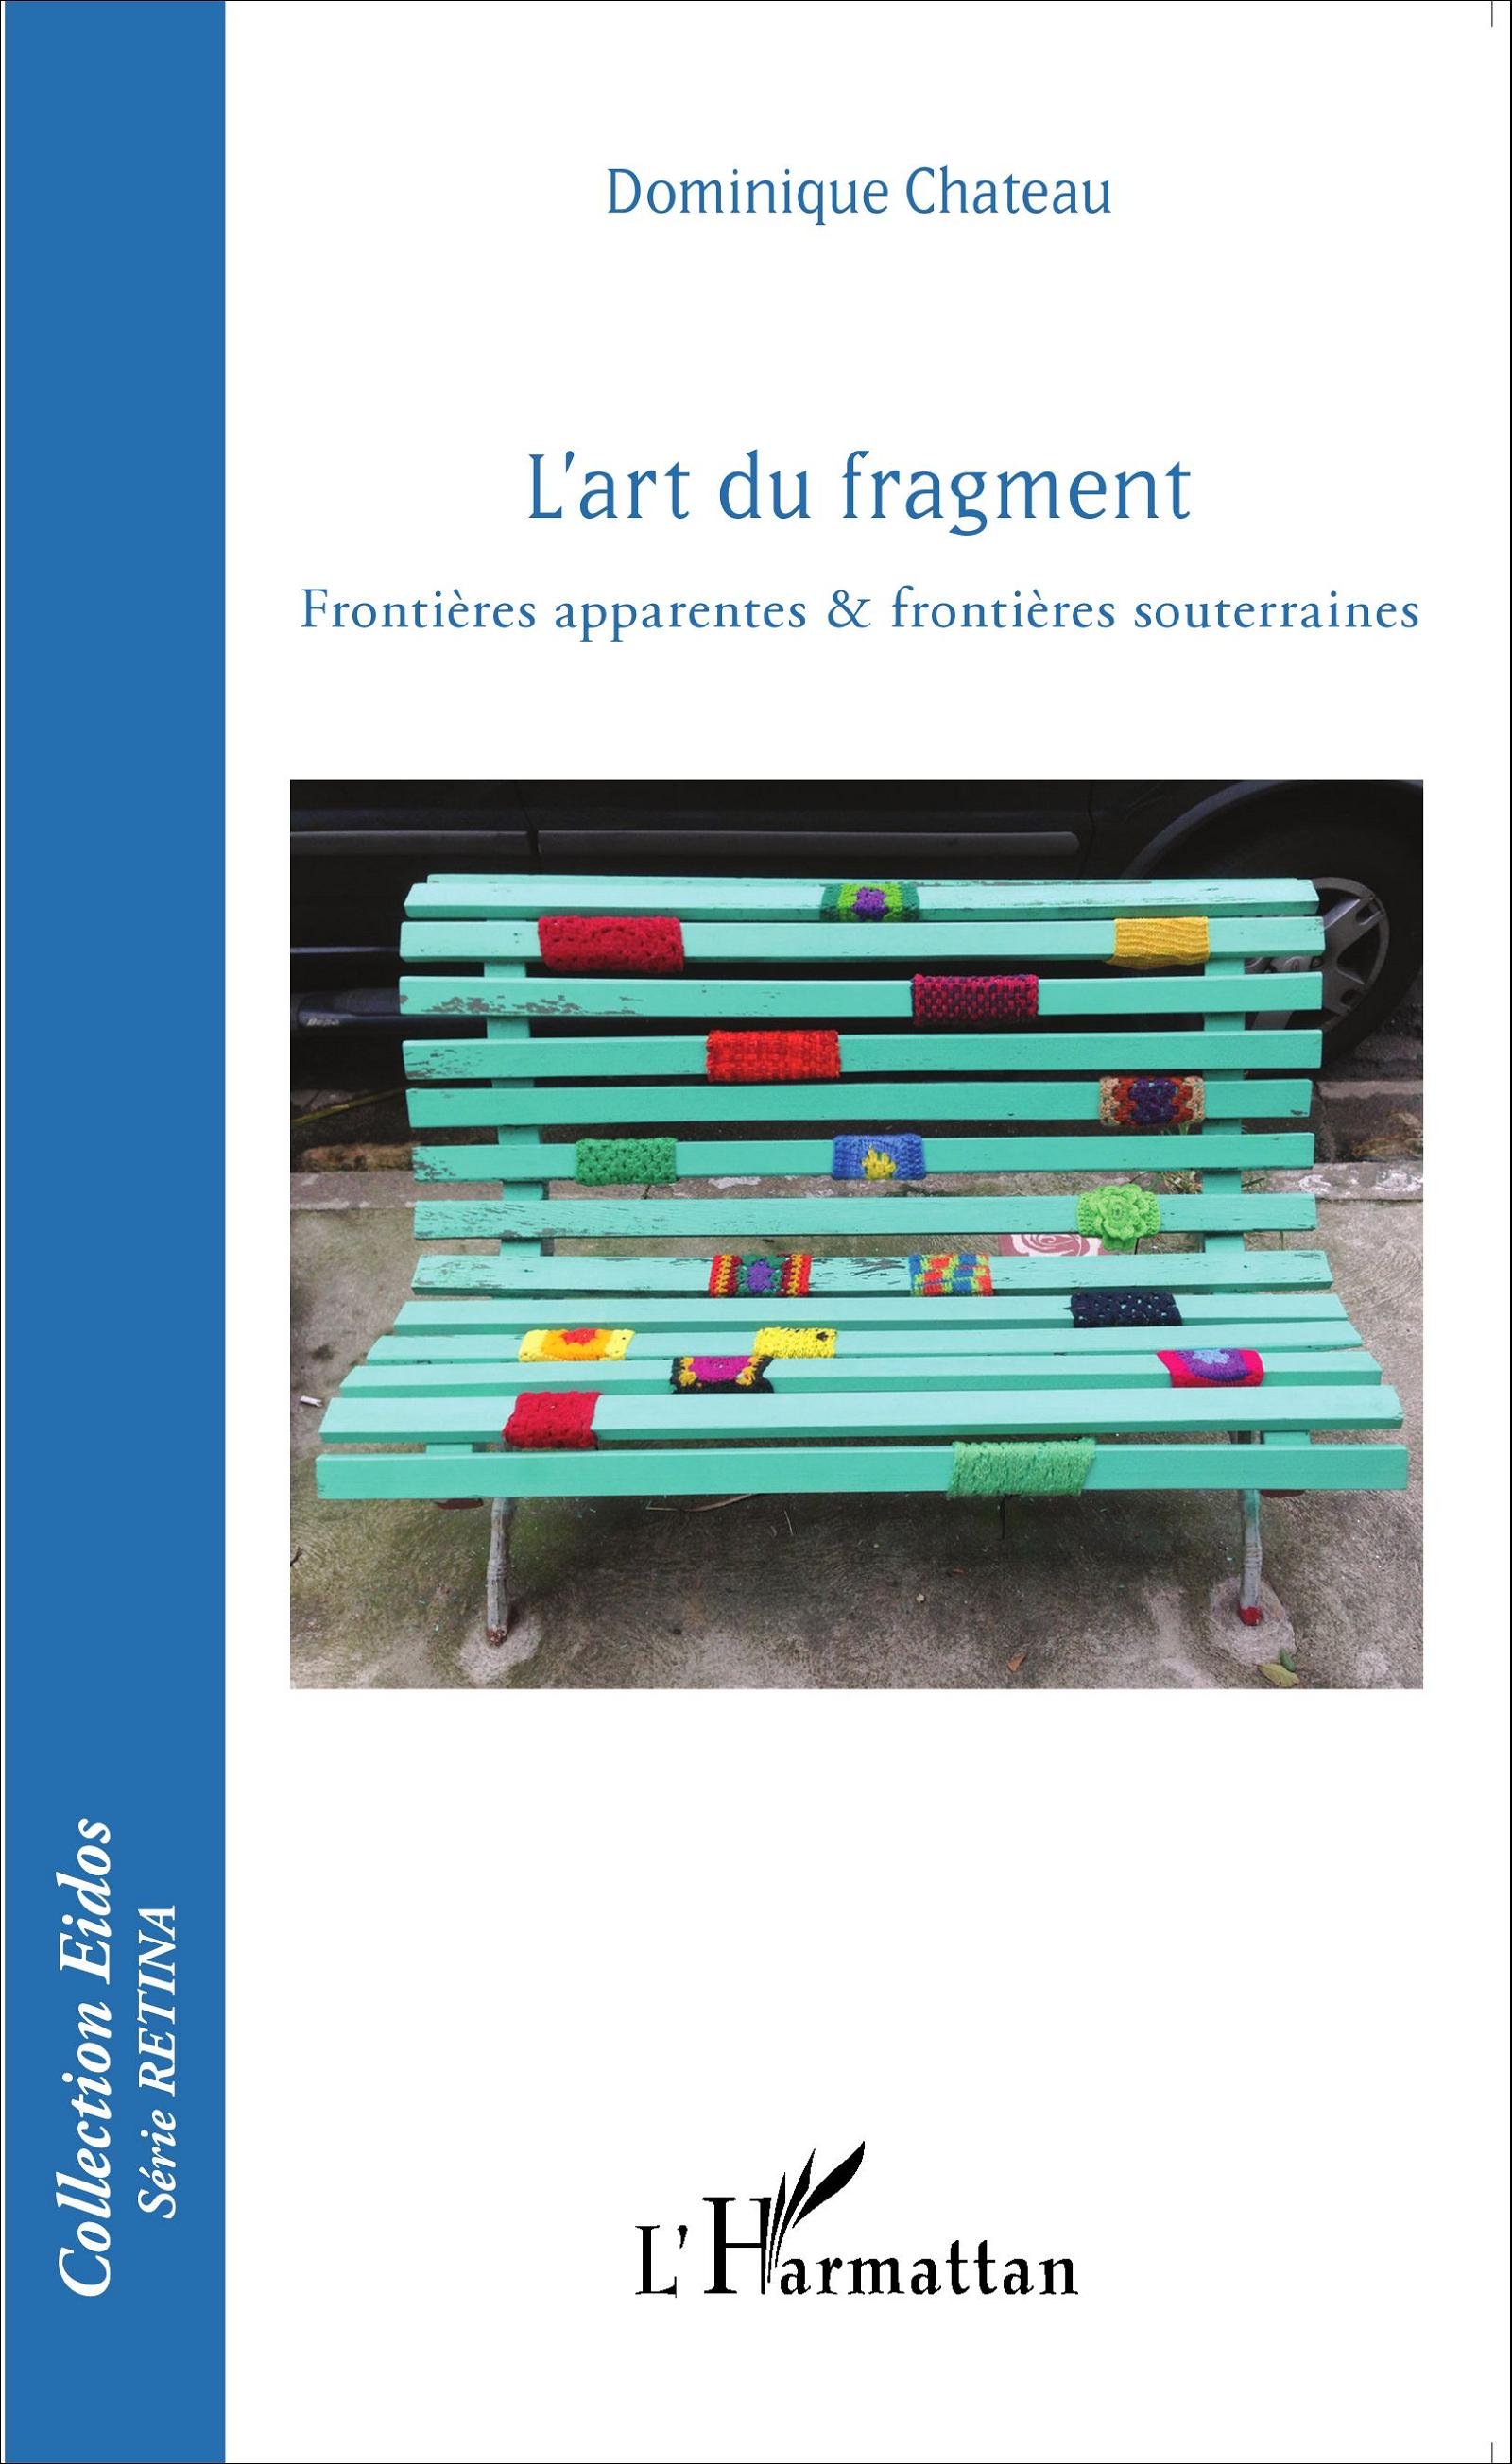 D. Chateau, L'Art du fragment - Frontières apparentes & frontières souterraines